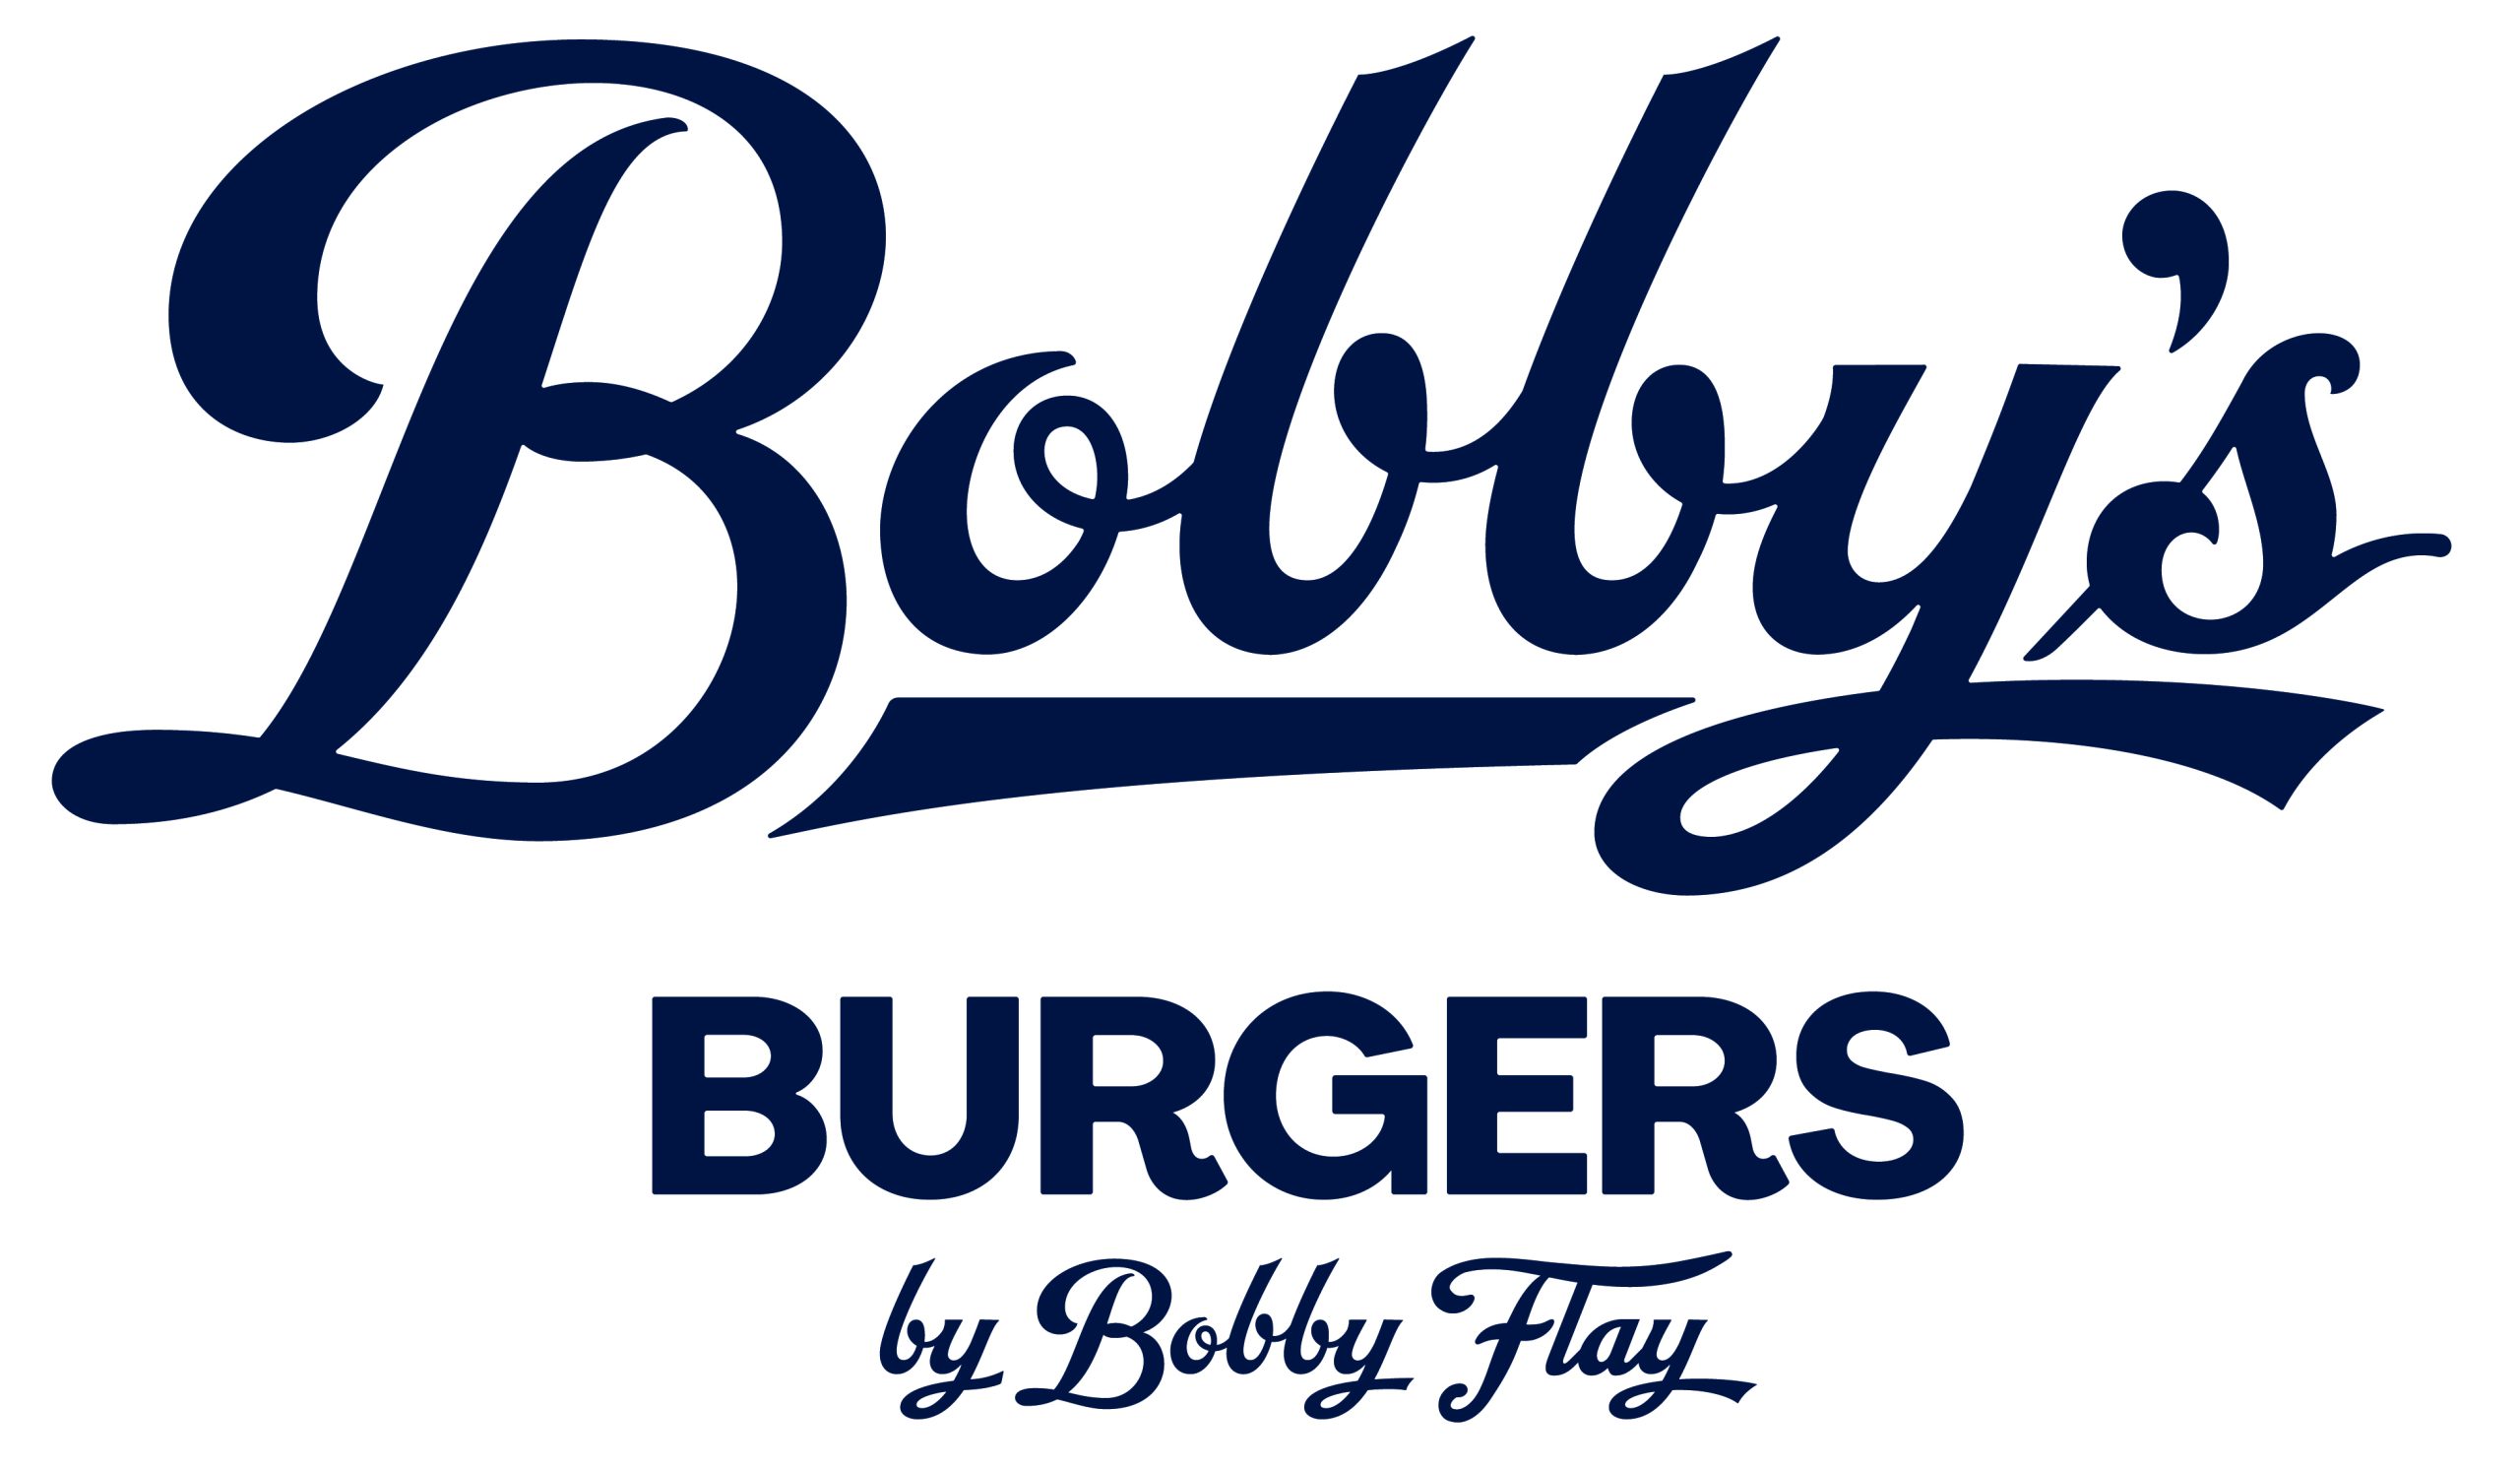 Bobby's Burgers by Bobby Flay logo